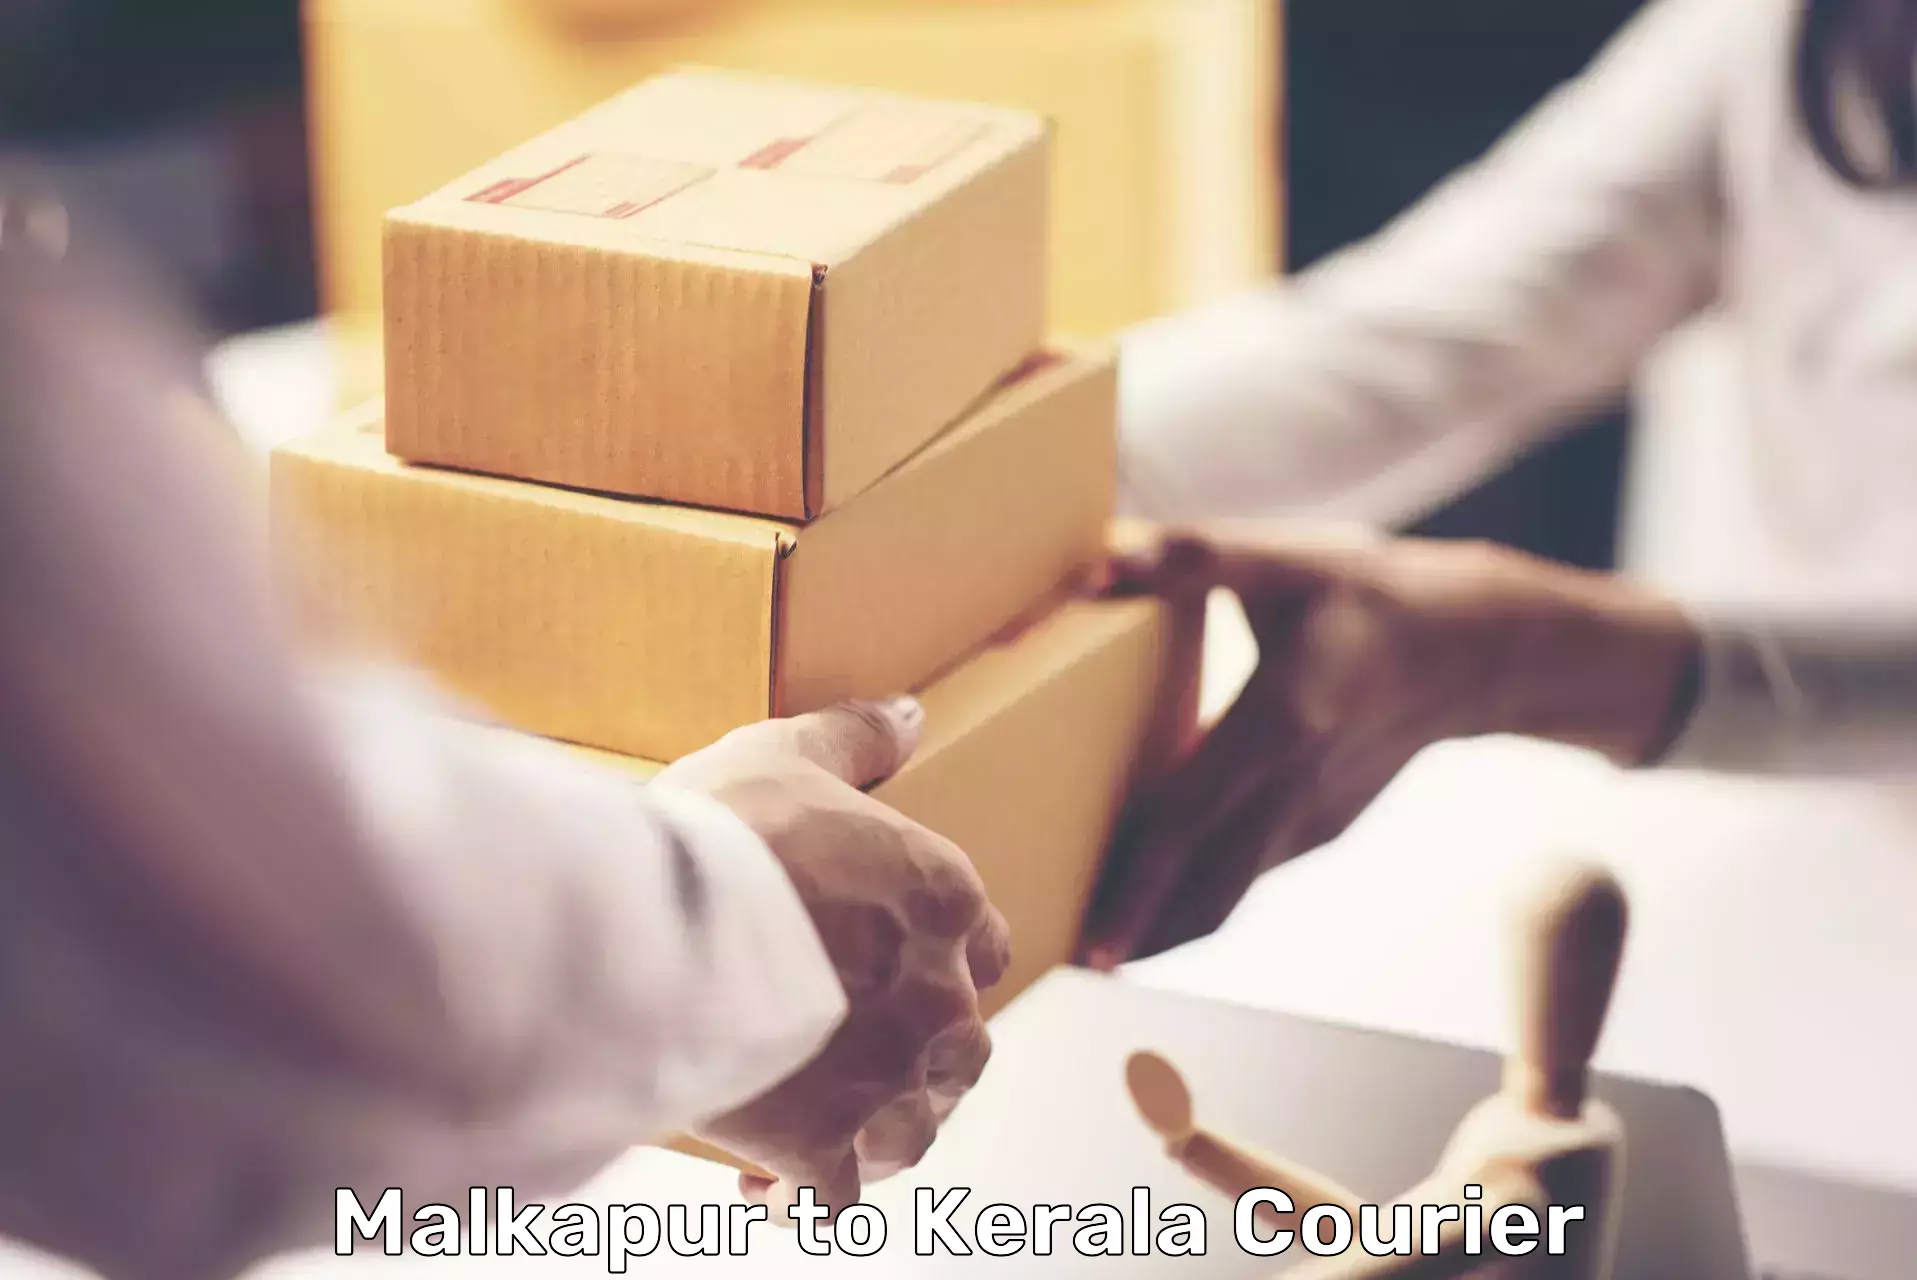 24/7 courier service Malkapur to Cochin Port Kochi